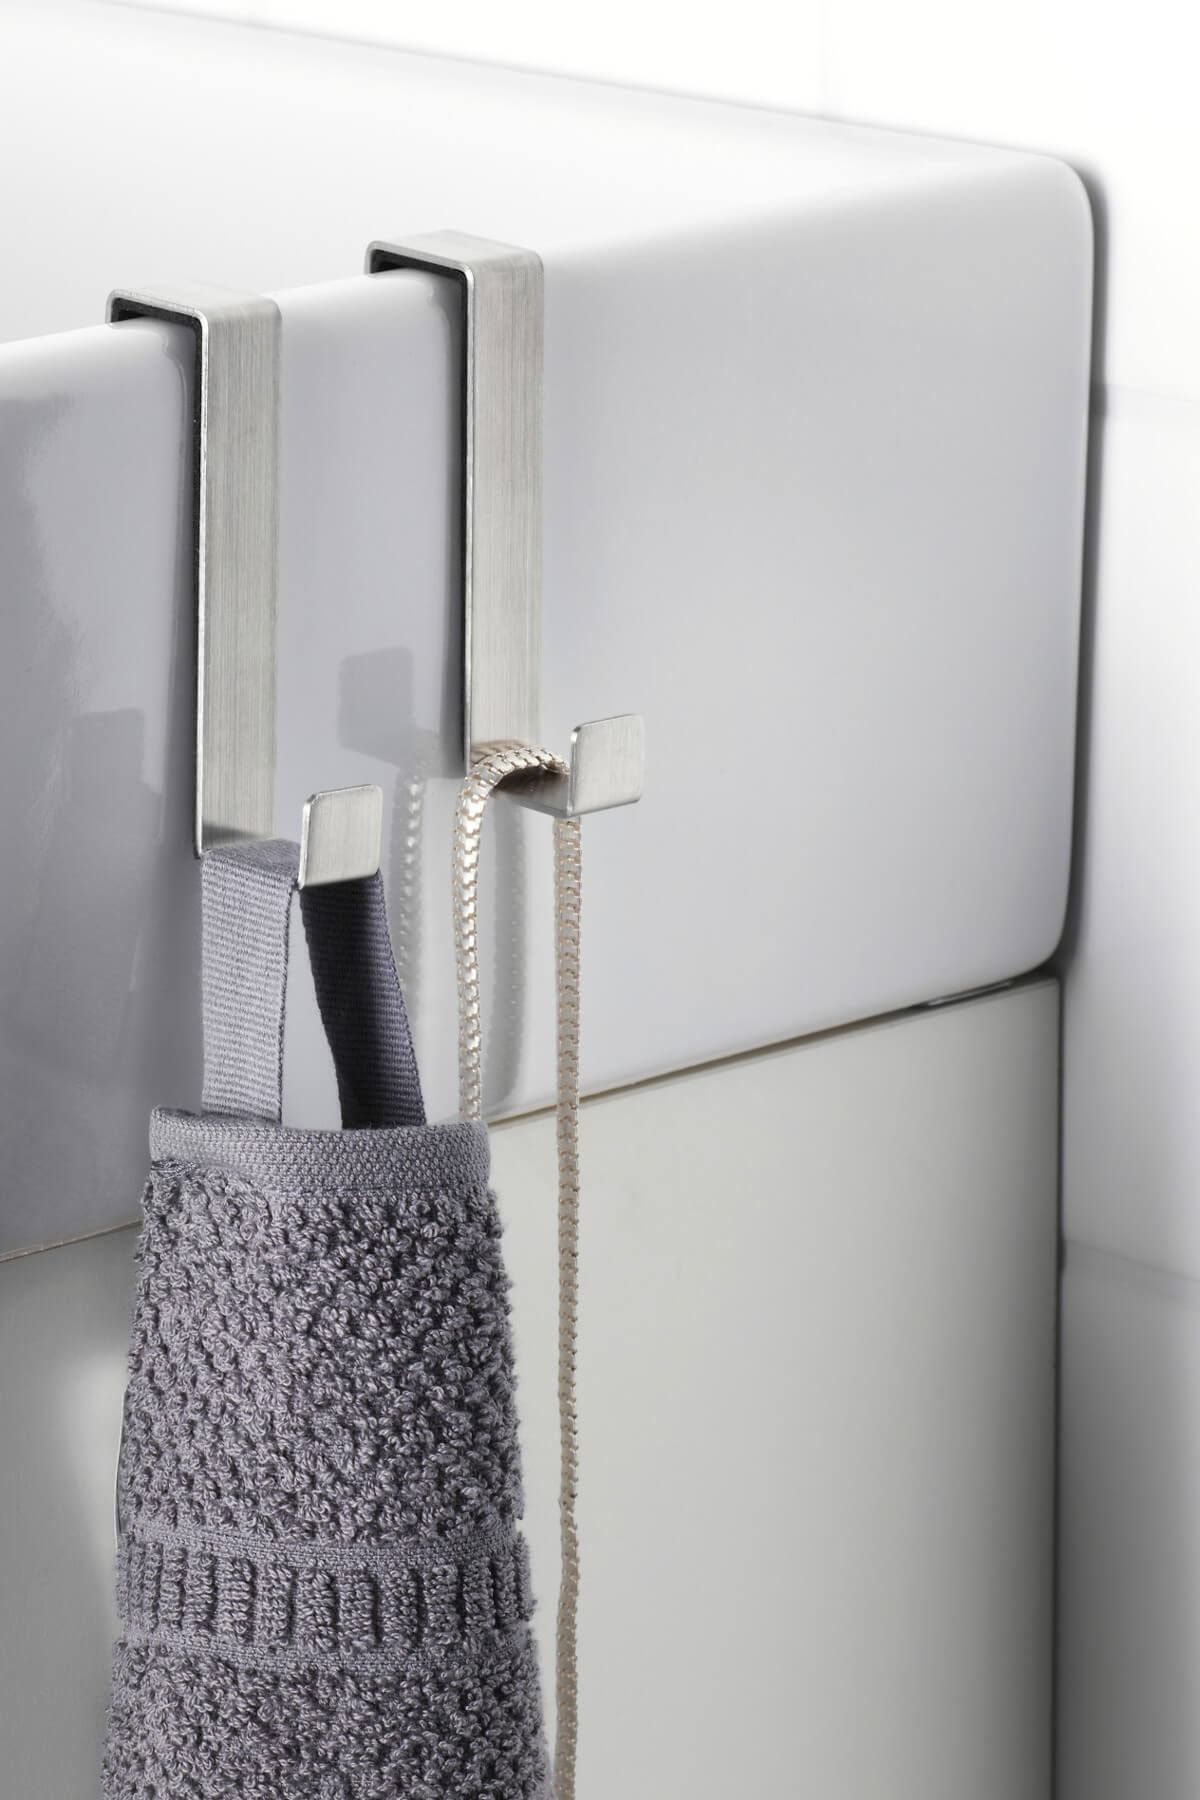 GBG 2 Adet Kapı Askısı 8.3 Cm Banyo Askısı Havlu Askısı Bornoz Askısı Paslanmaz Çelik Kaliteli Ikea